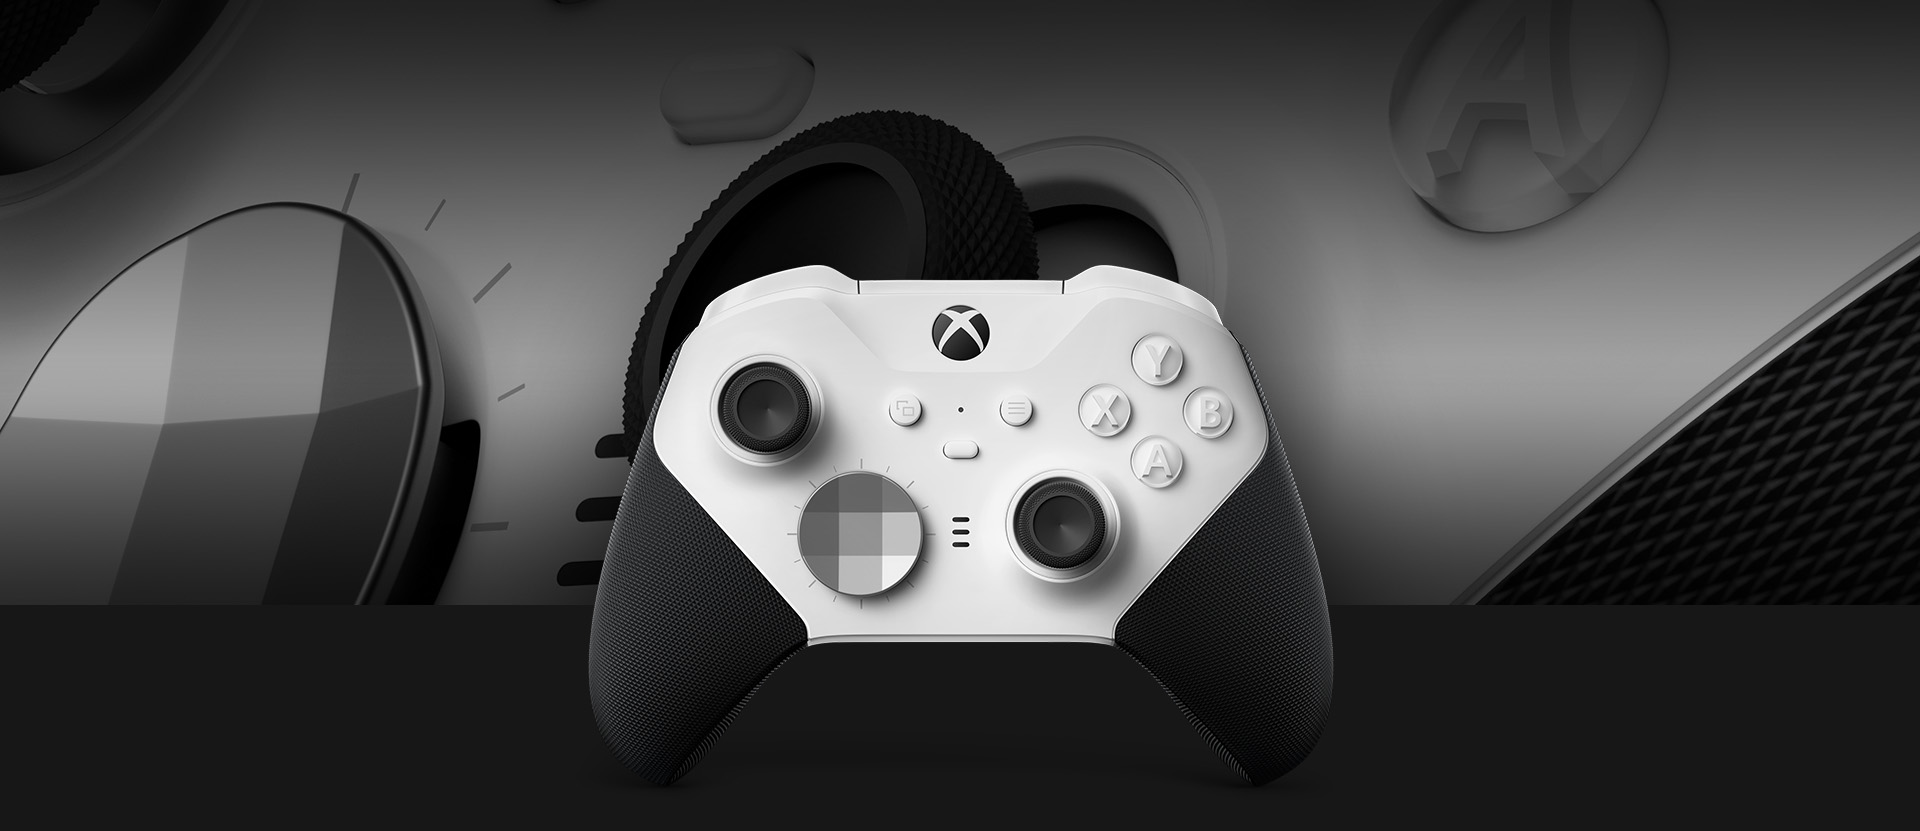 Originální a značně vylepšený gamepad Xbox Wireless Controller Elite Series 2 Core Edition byl navržený ve spolupráci s předními profesionálními hráči světové úrovně.